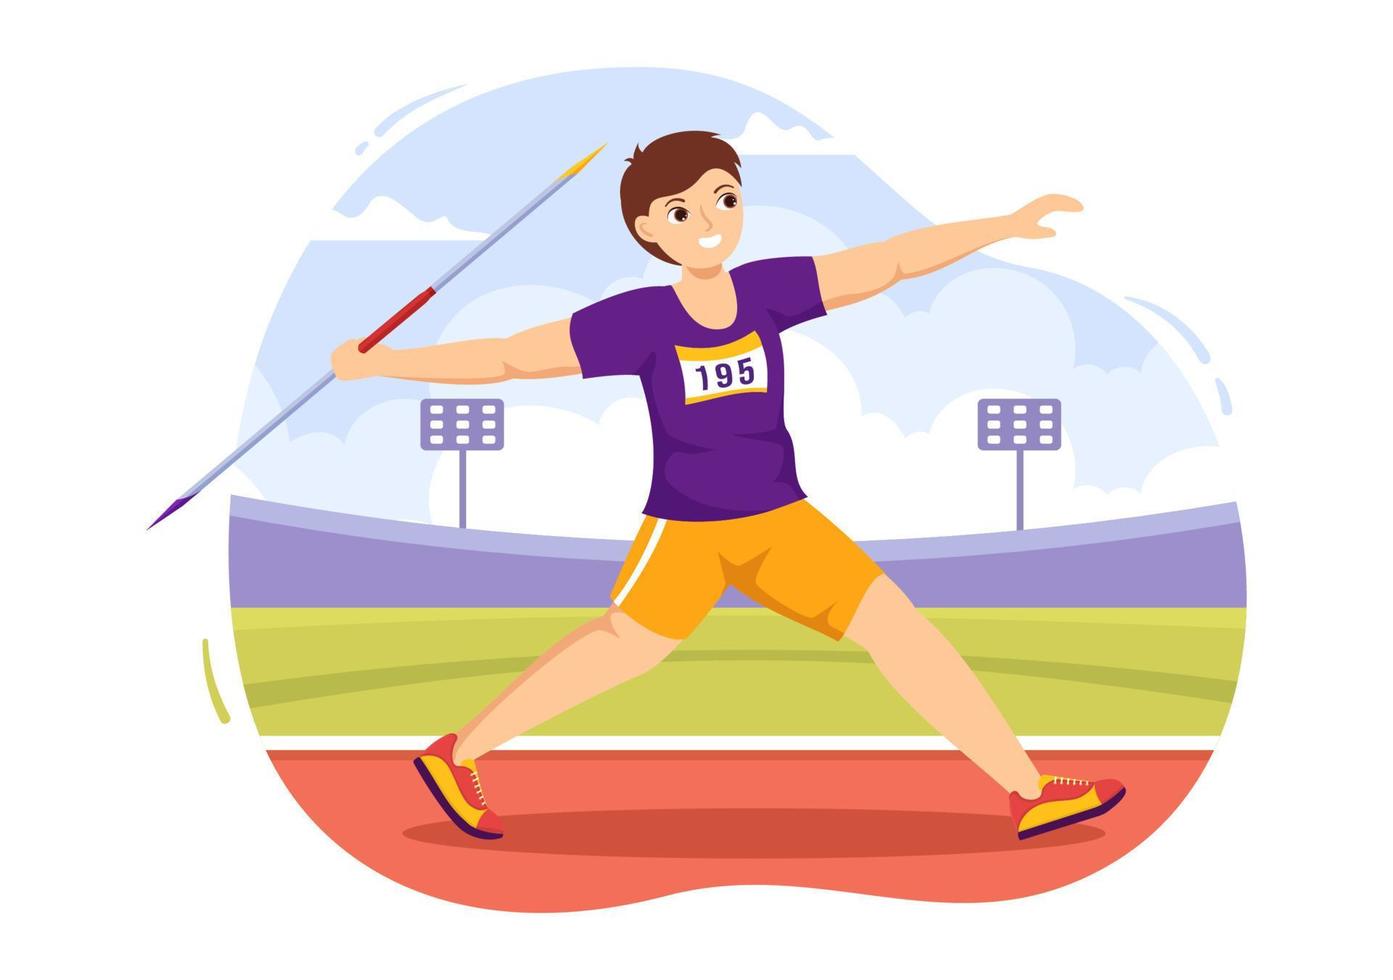 ilustración de atleta de lanzamiento de jabalina usando una herramienta en forma de lanza larga para lanzar una plantilla dibujada a mano de dibujos animados planos de actividad deportiva vector